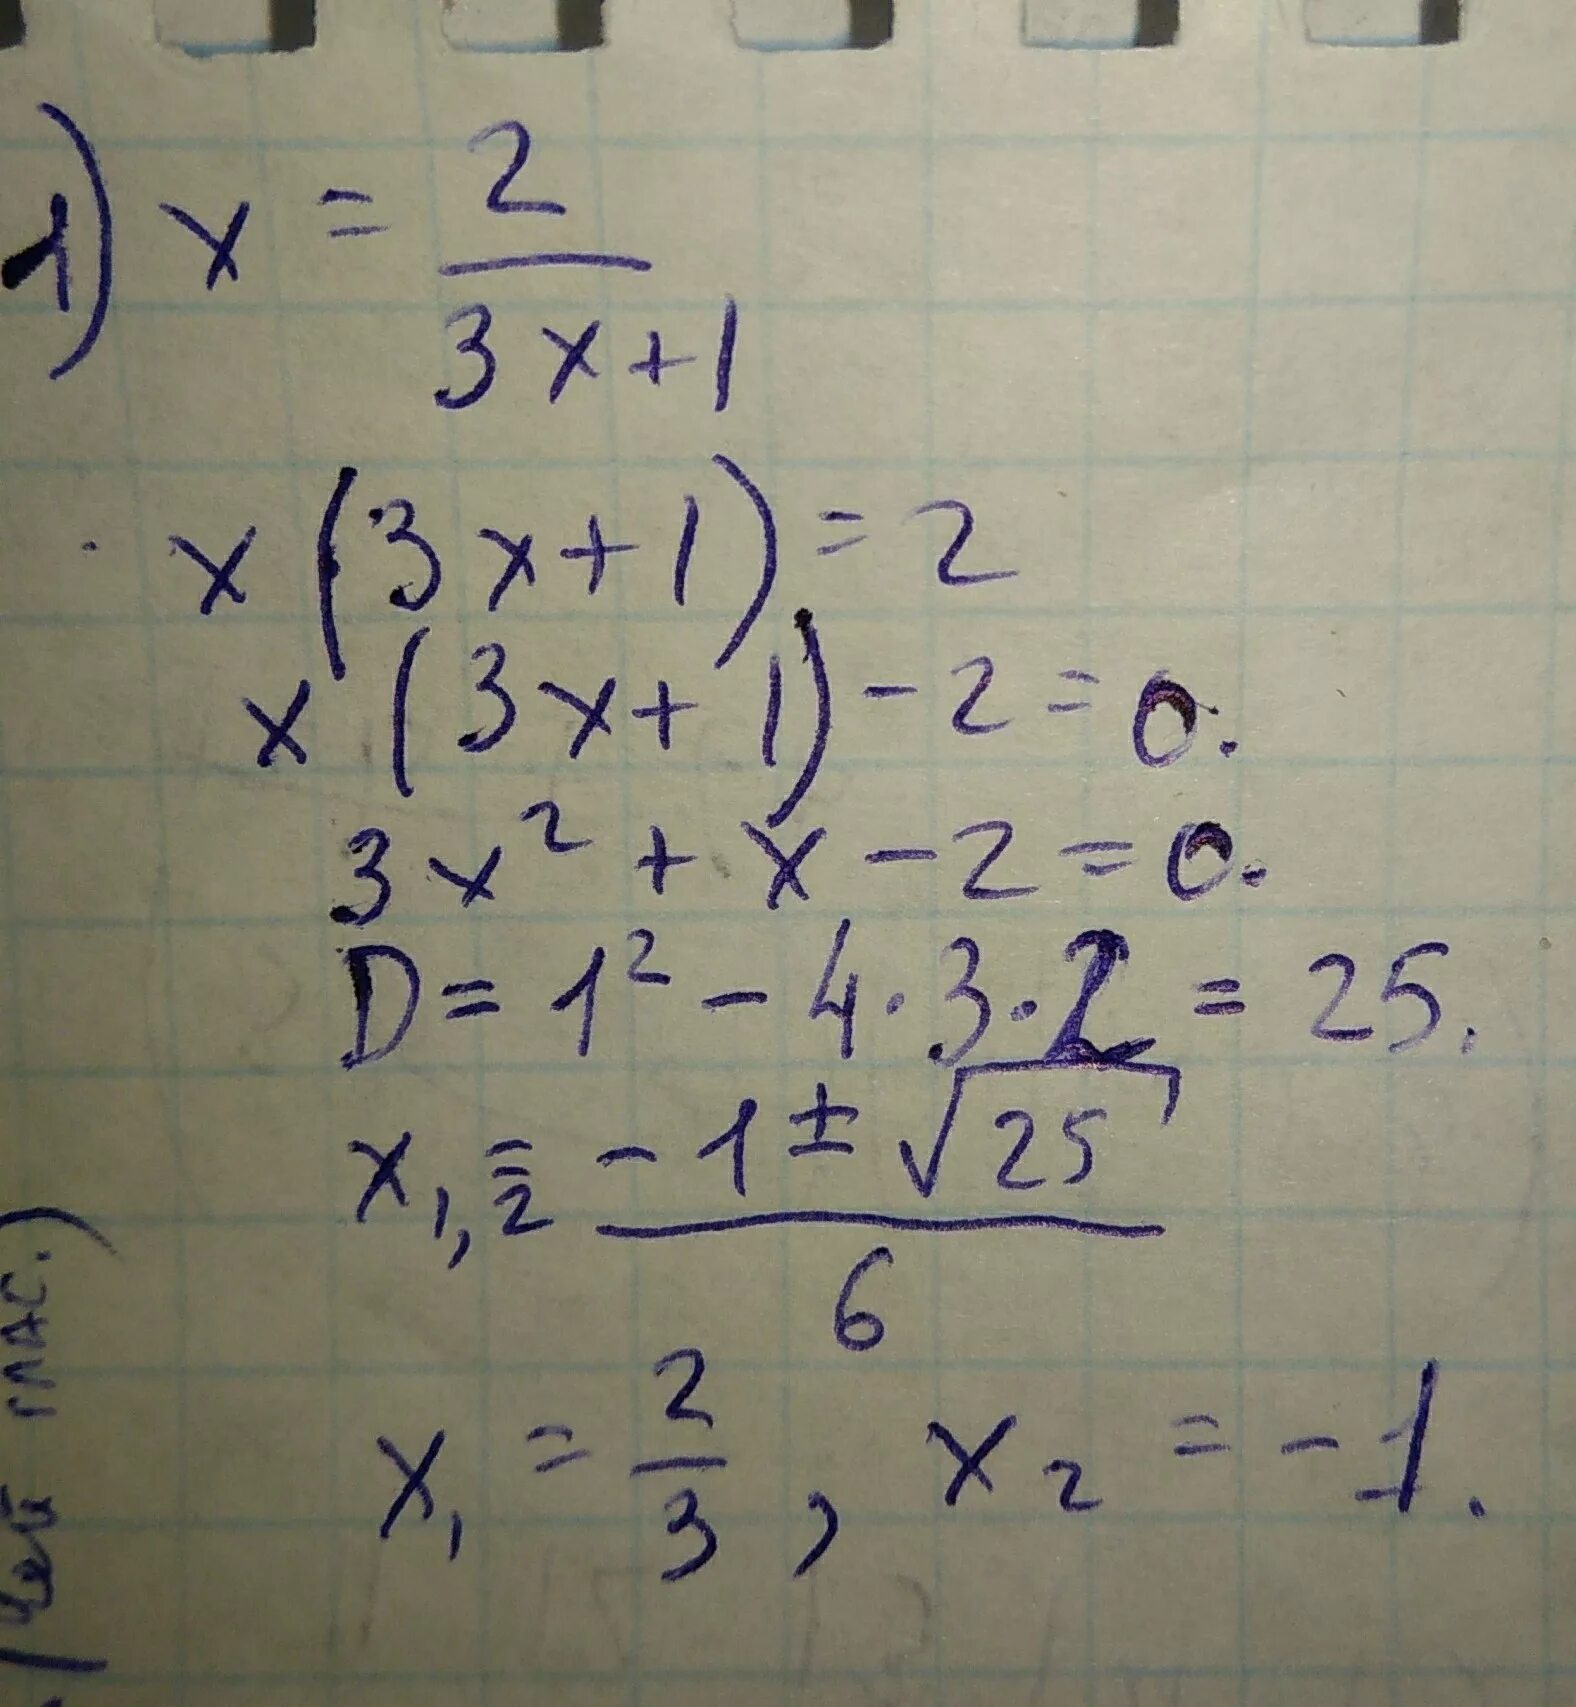 Решение 2(2x-1)-3(x-2)=6+4(3-2x). (X-2)^3. (1/3)^4x-4×(1/3)^2-3x=1 решение. X2-3x-1-2x2+3x-5/2 1.5. X 3 1 y 4 36